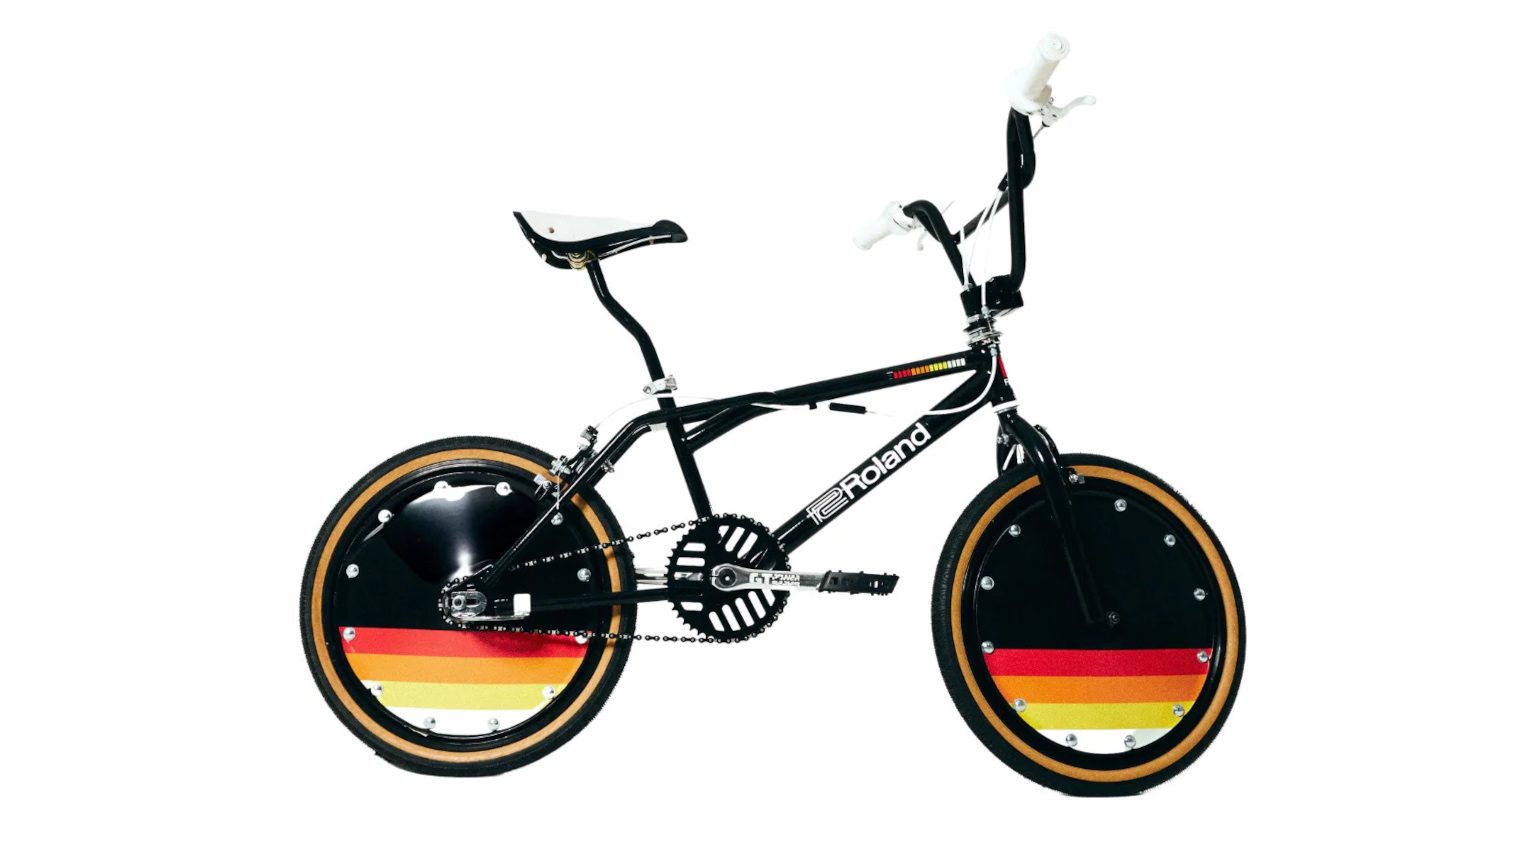 808 BMX Bike